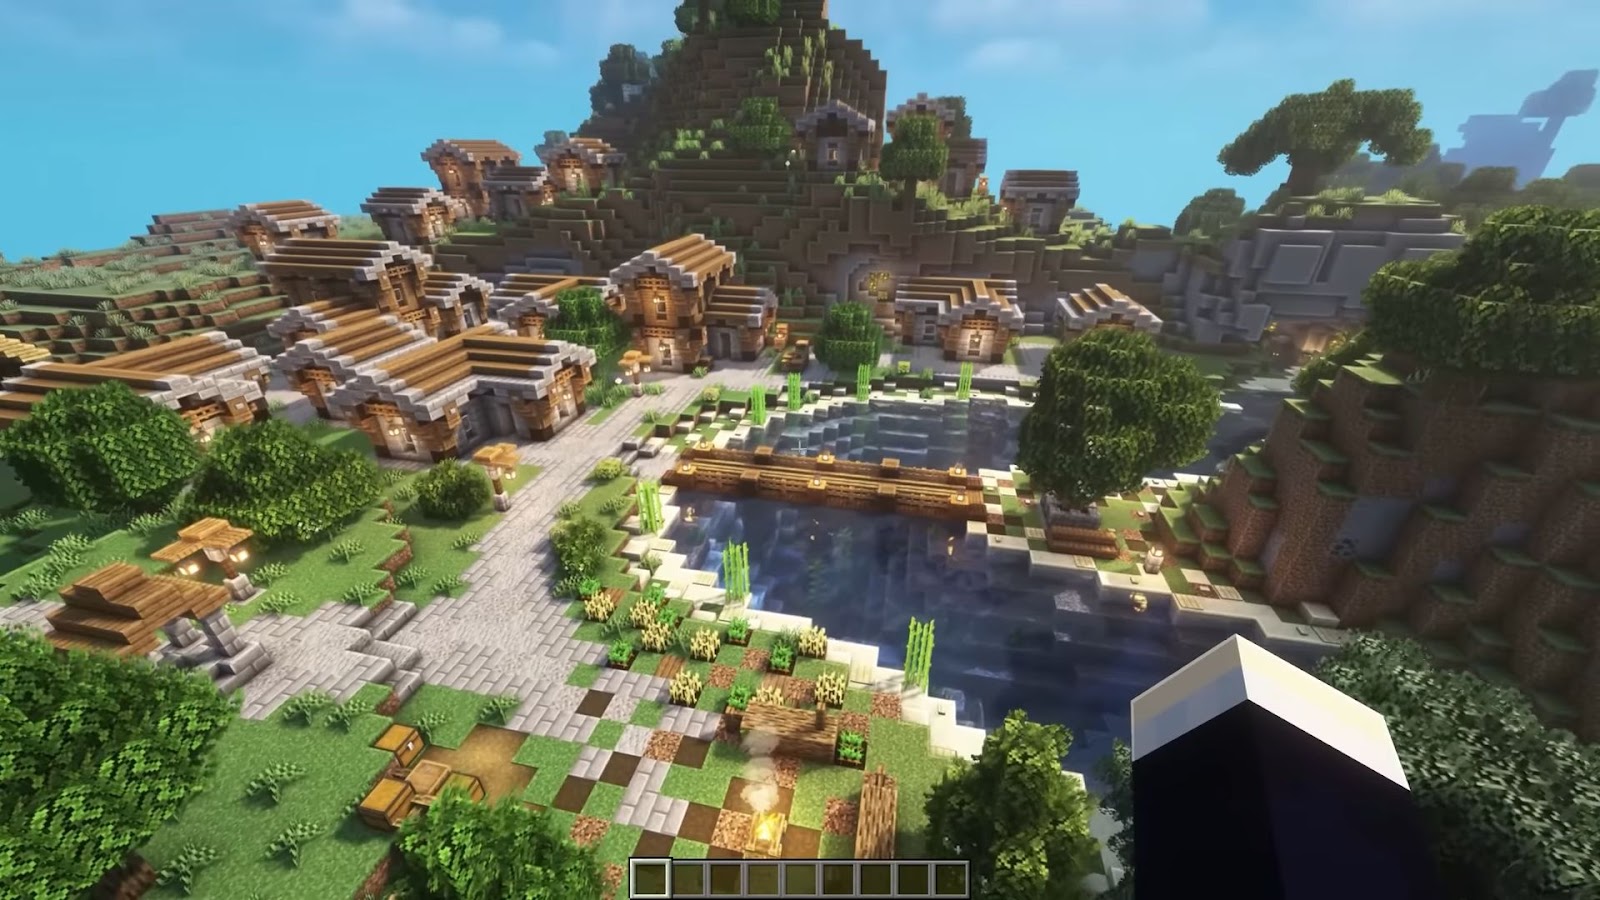 Minecraft Village View